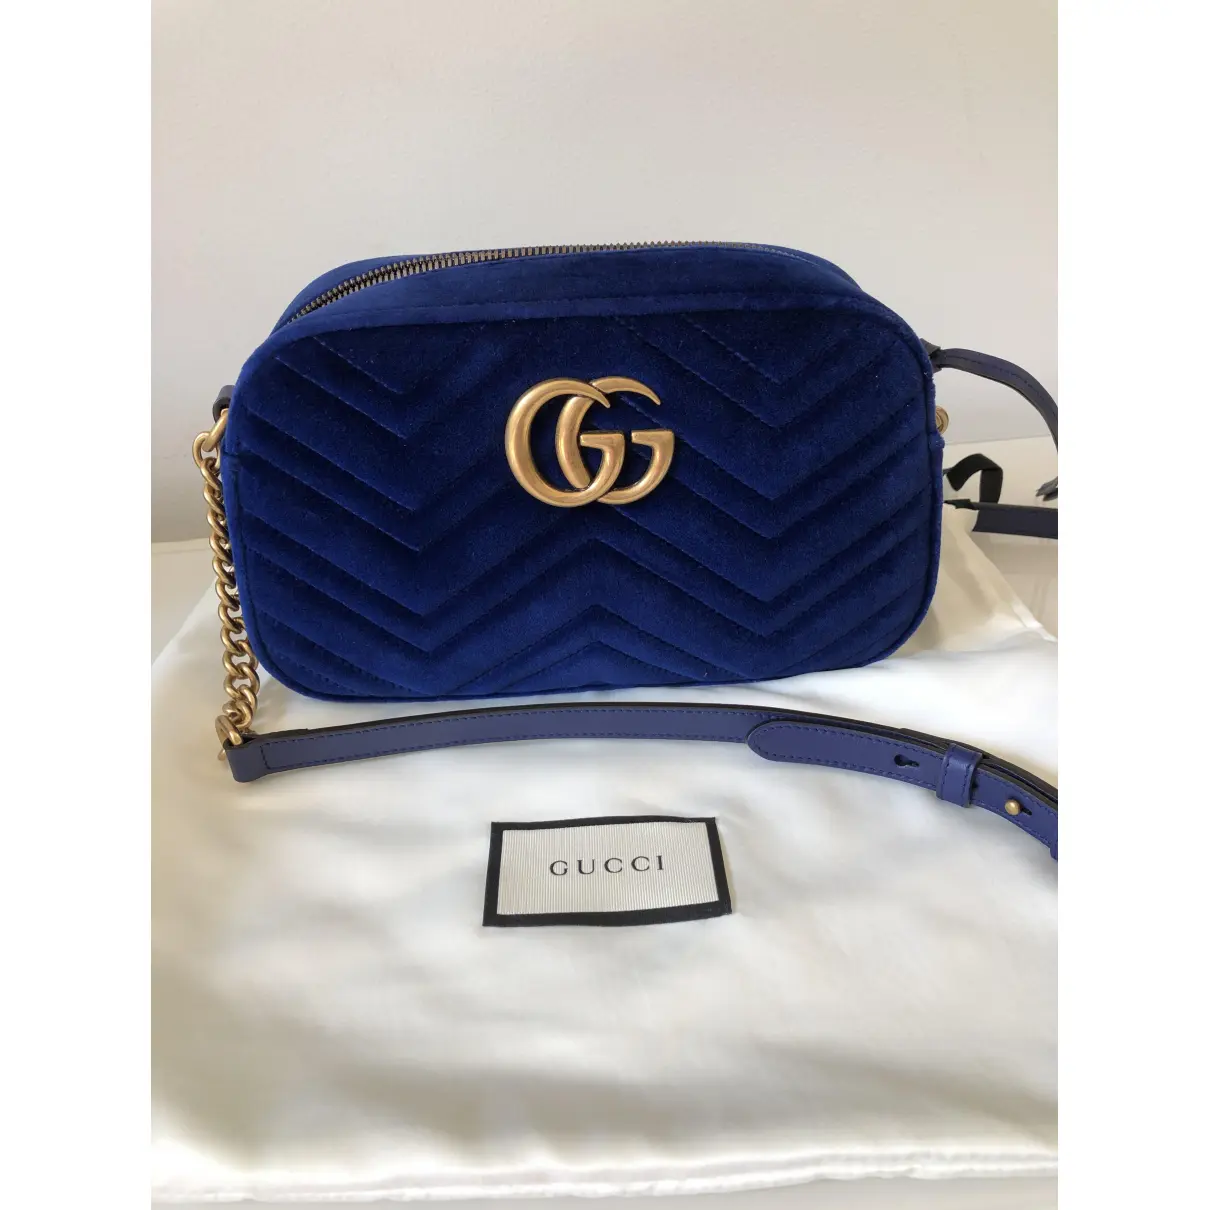 GG Marmont velvet crossbody bag Gucci